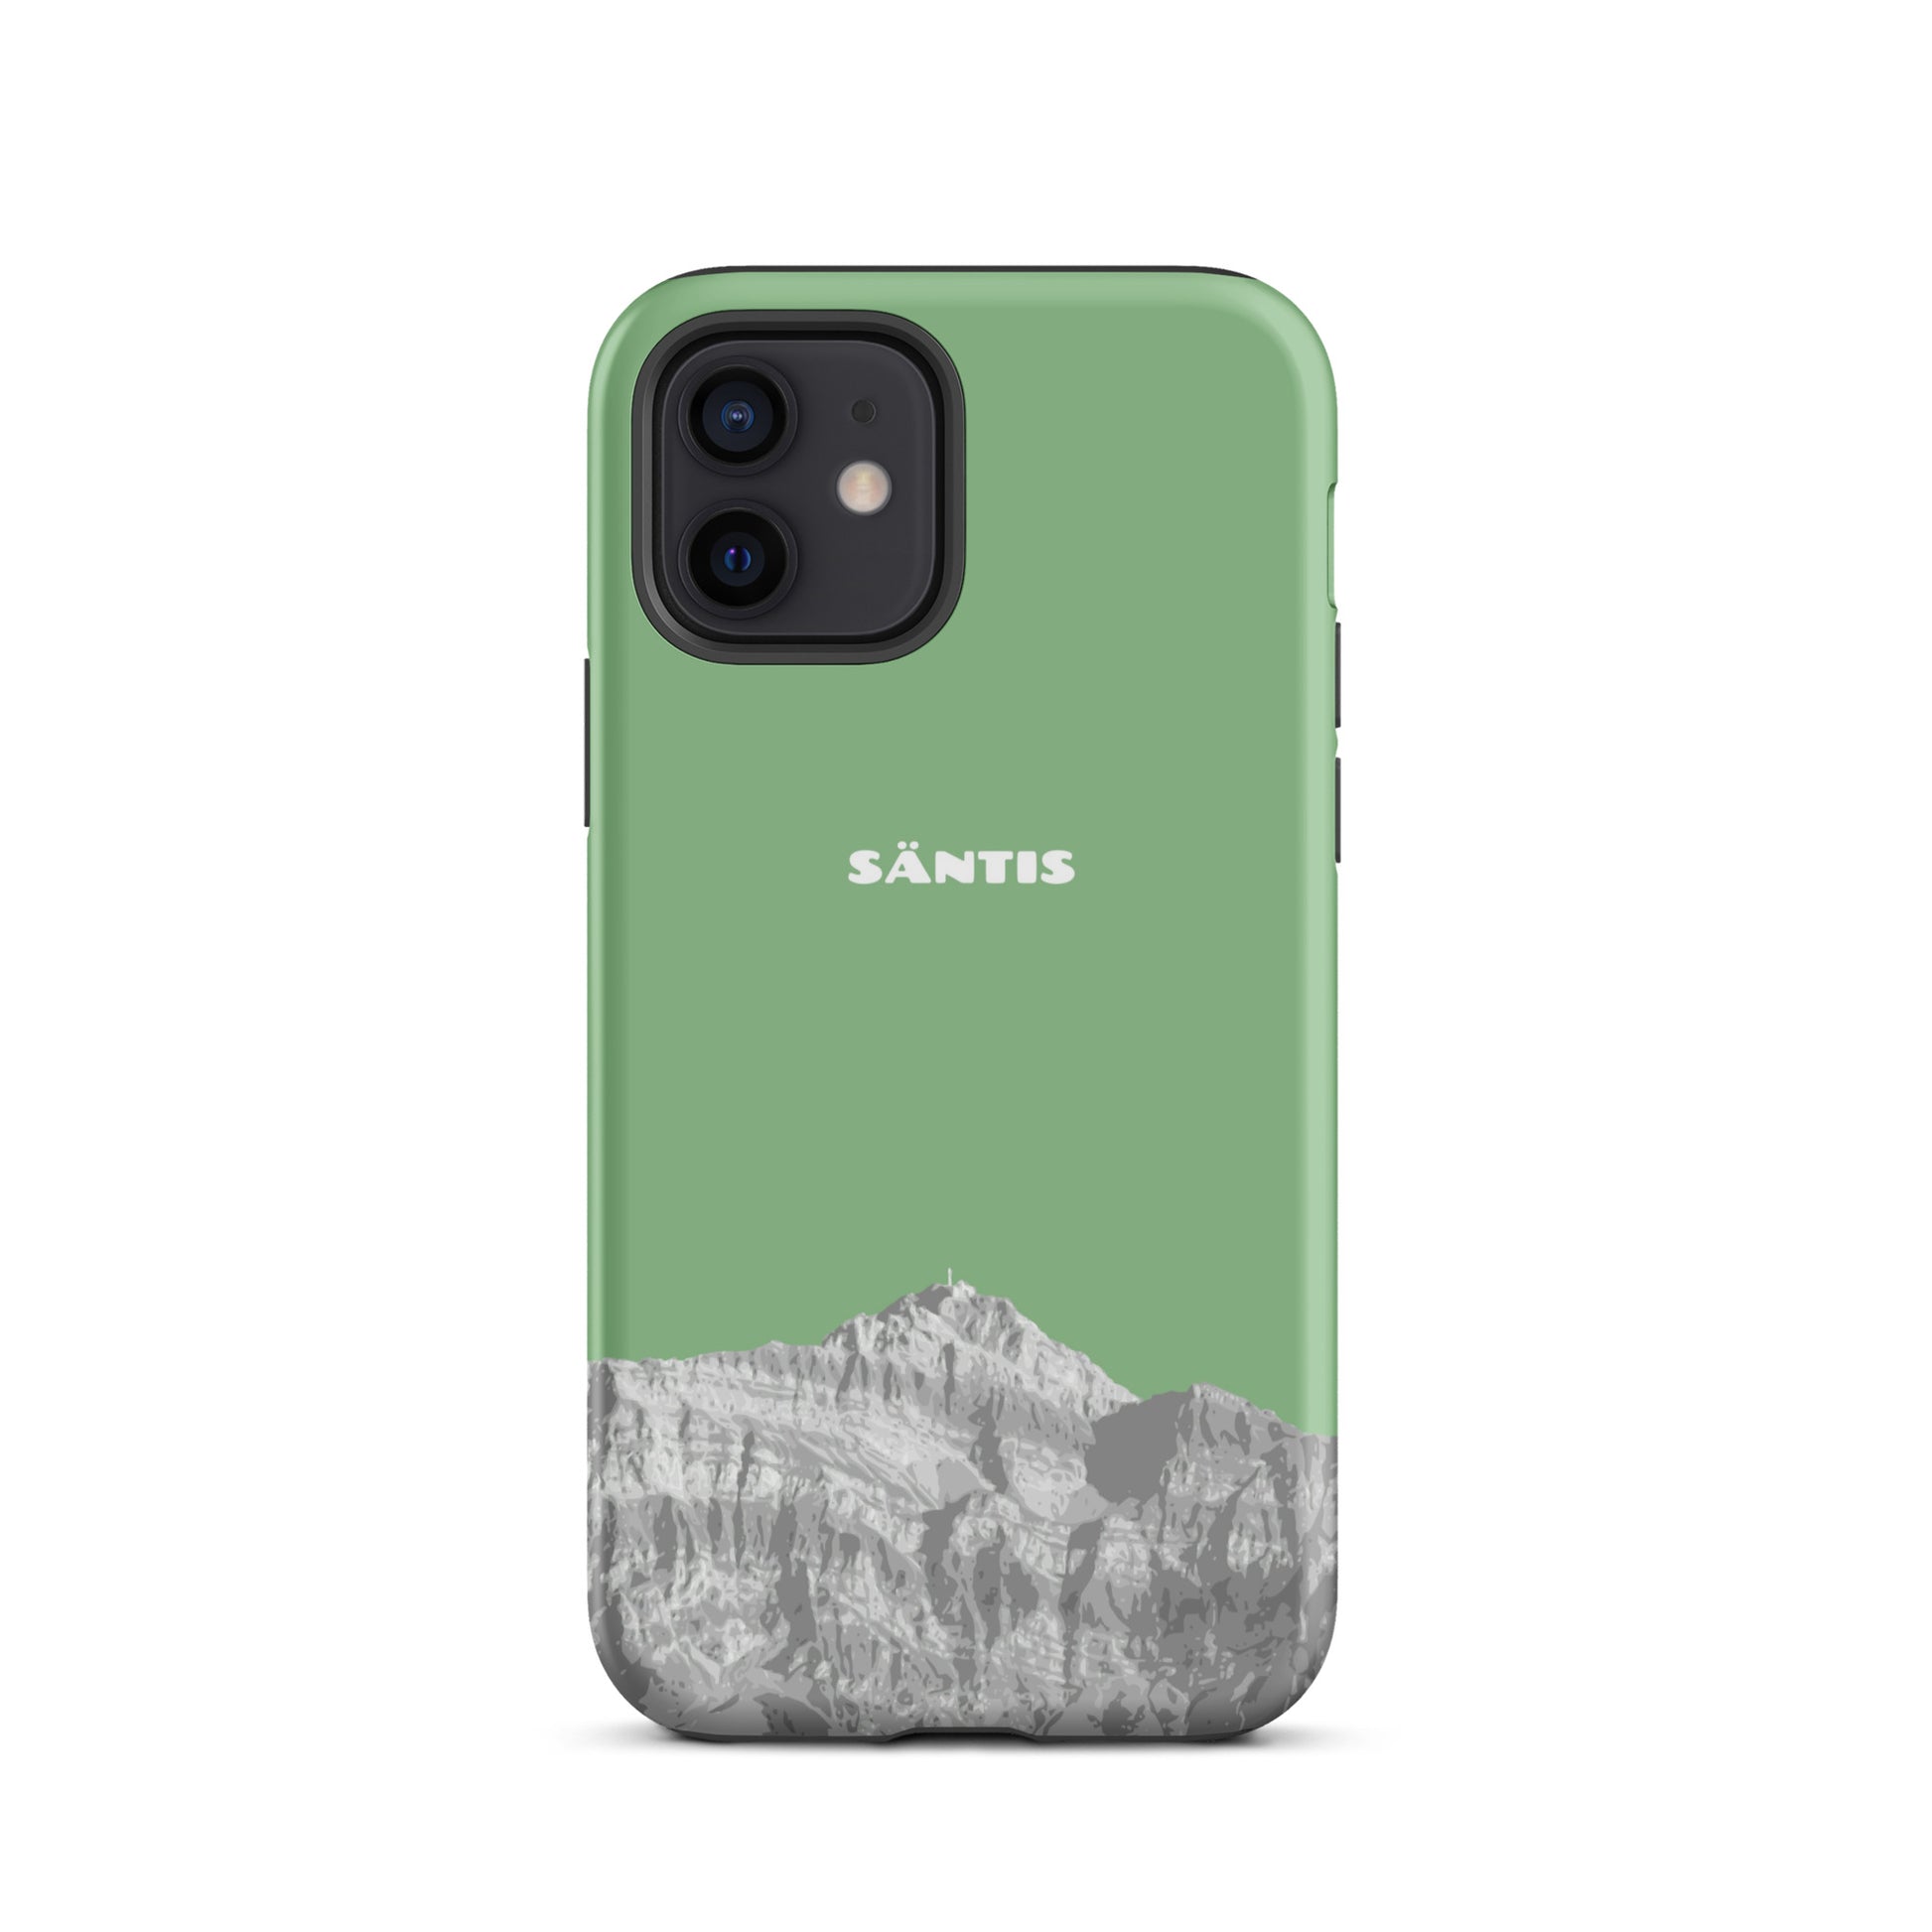 Hülle für das iPhone 12 von Apple in der Farbe Hellgrün, dass den Säntis im Alpstein zeigt.